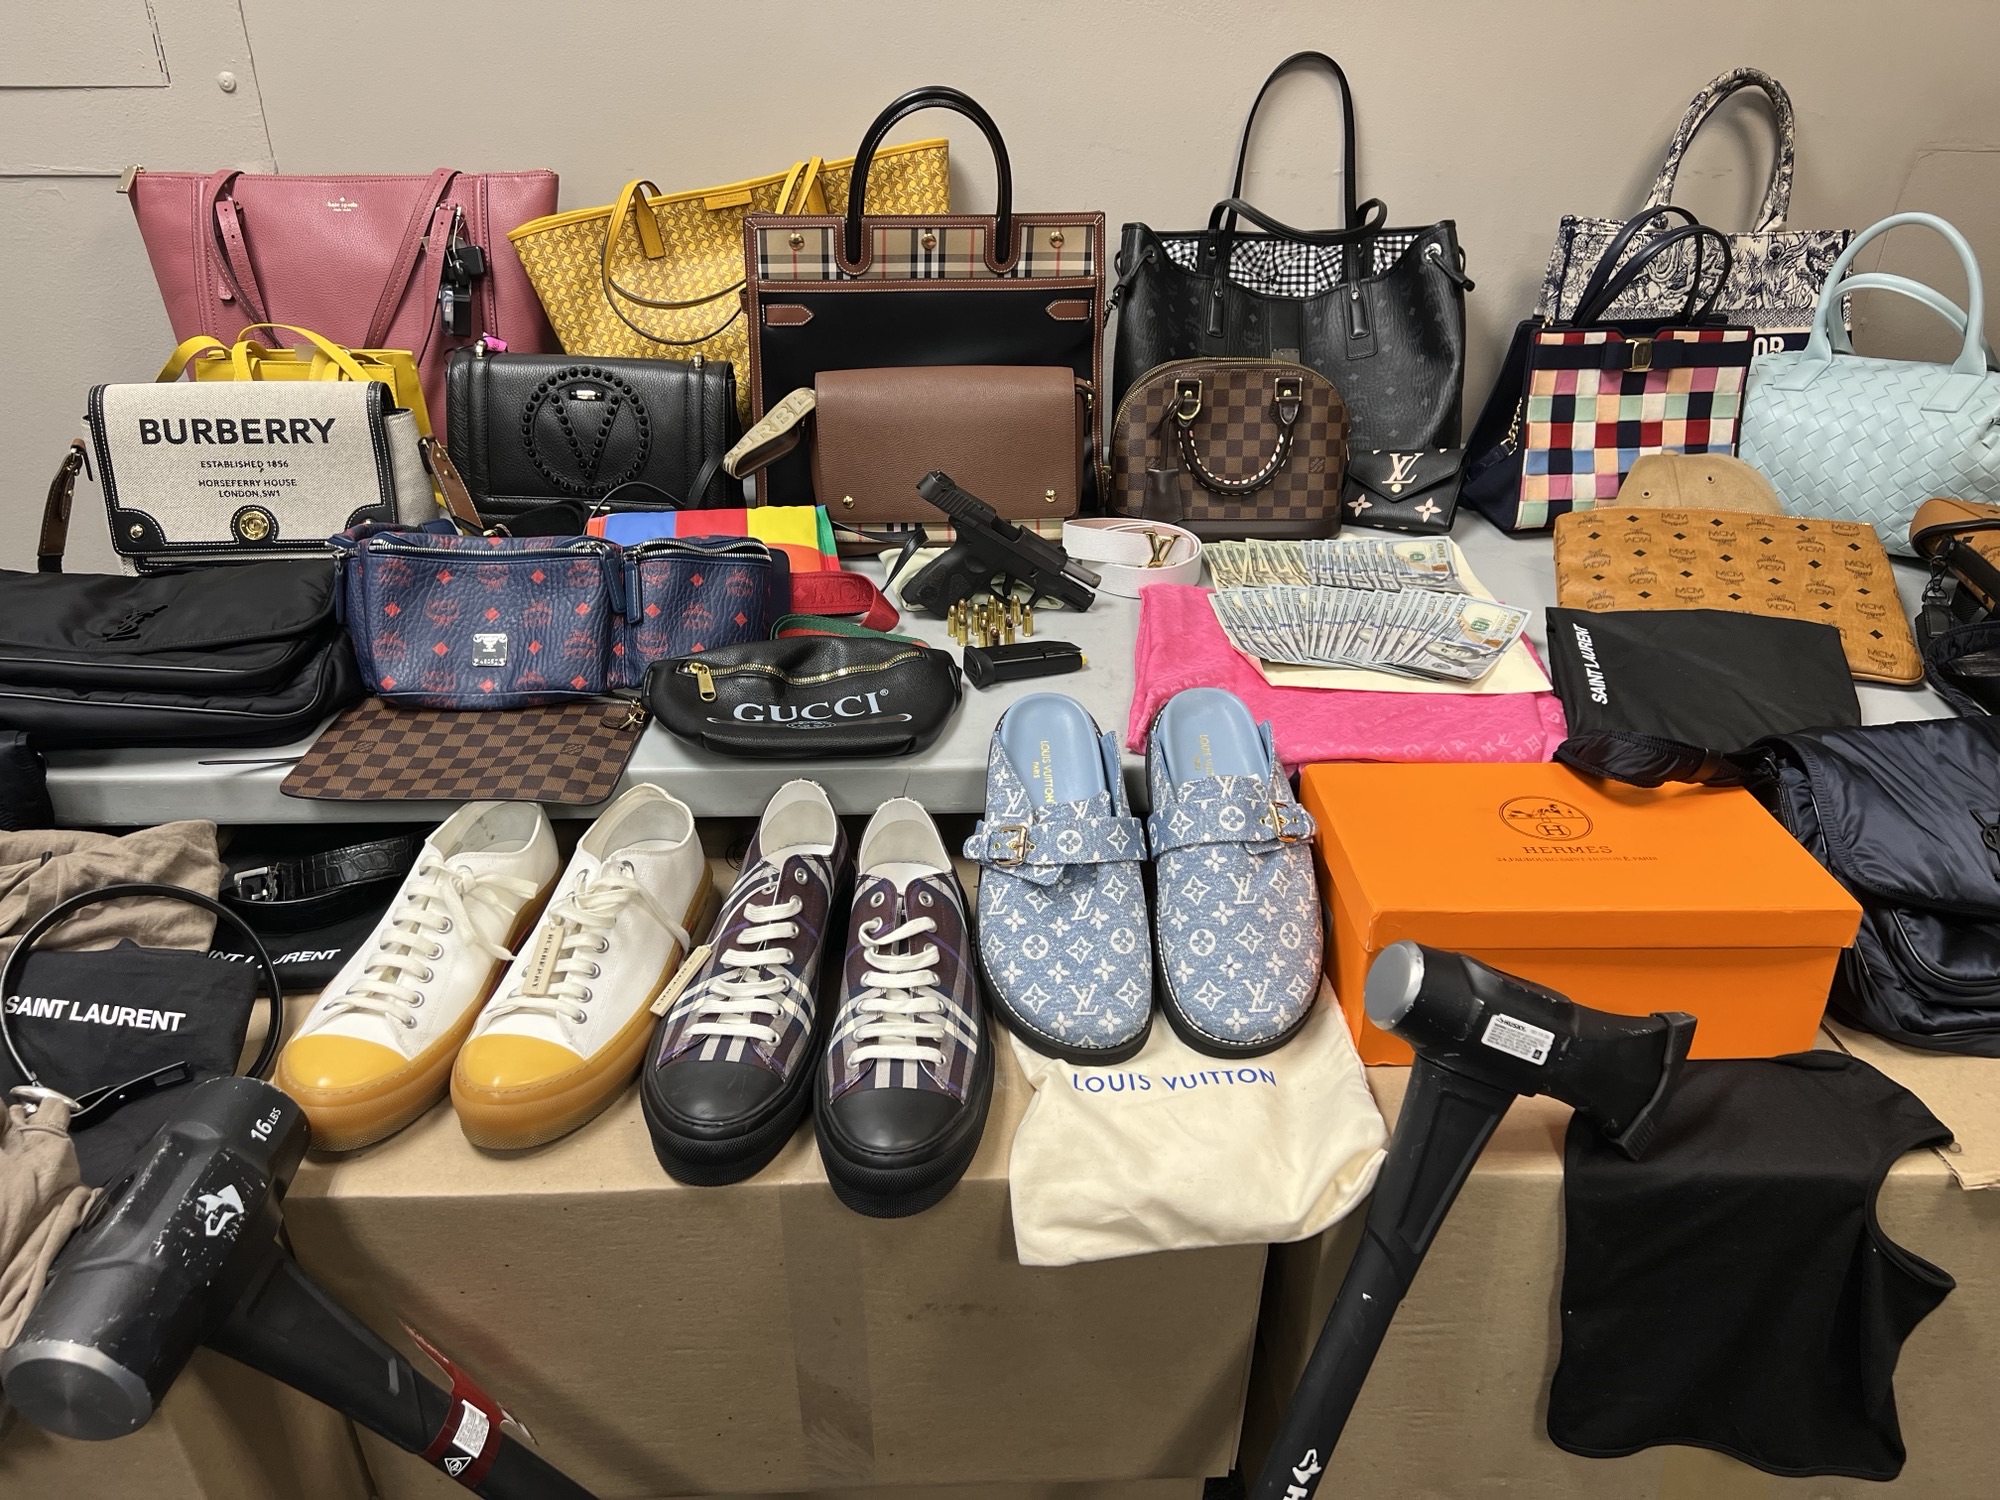 Louis Vuitton bags stolen from mall